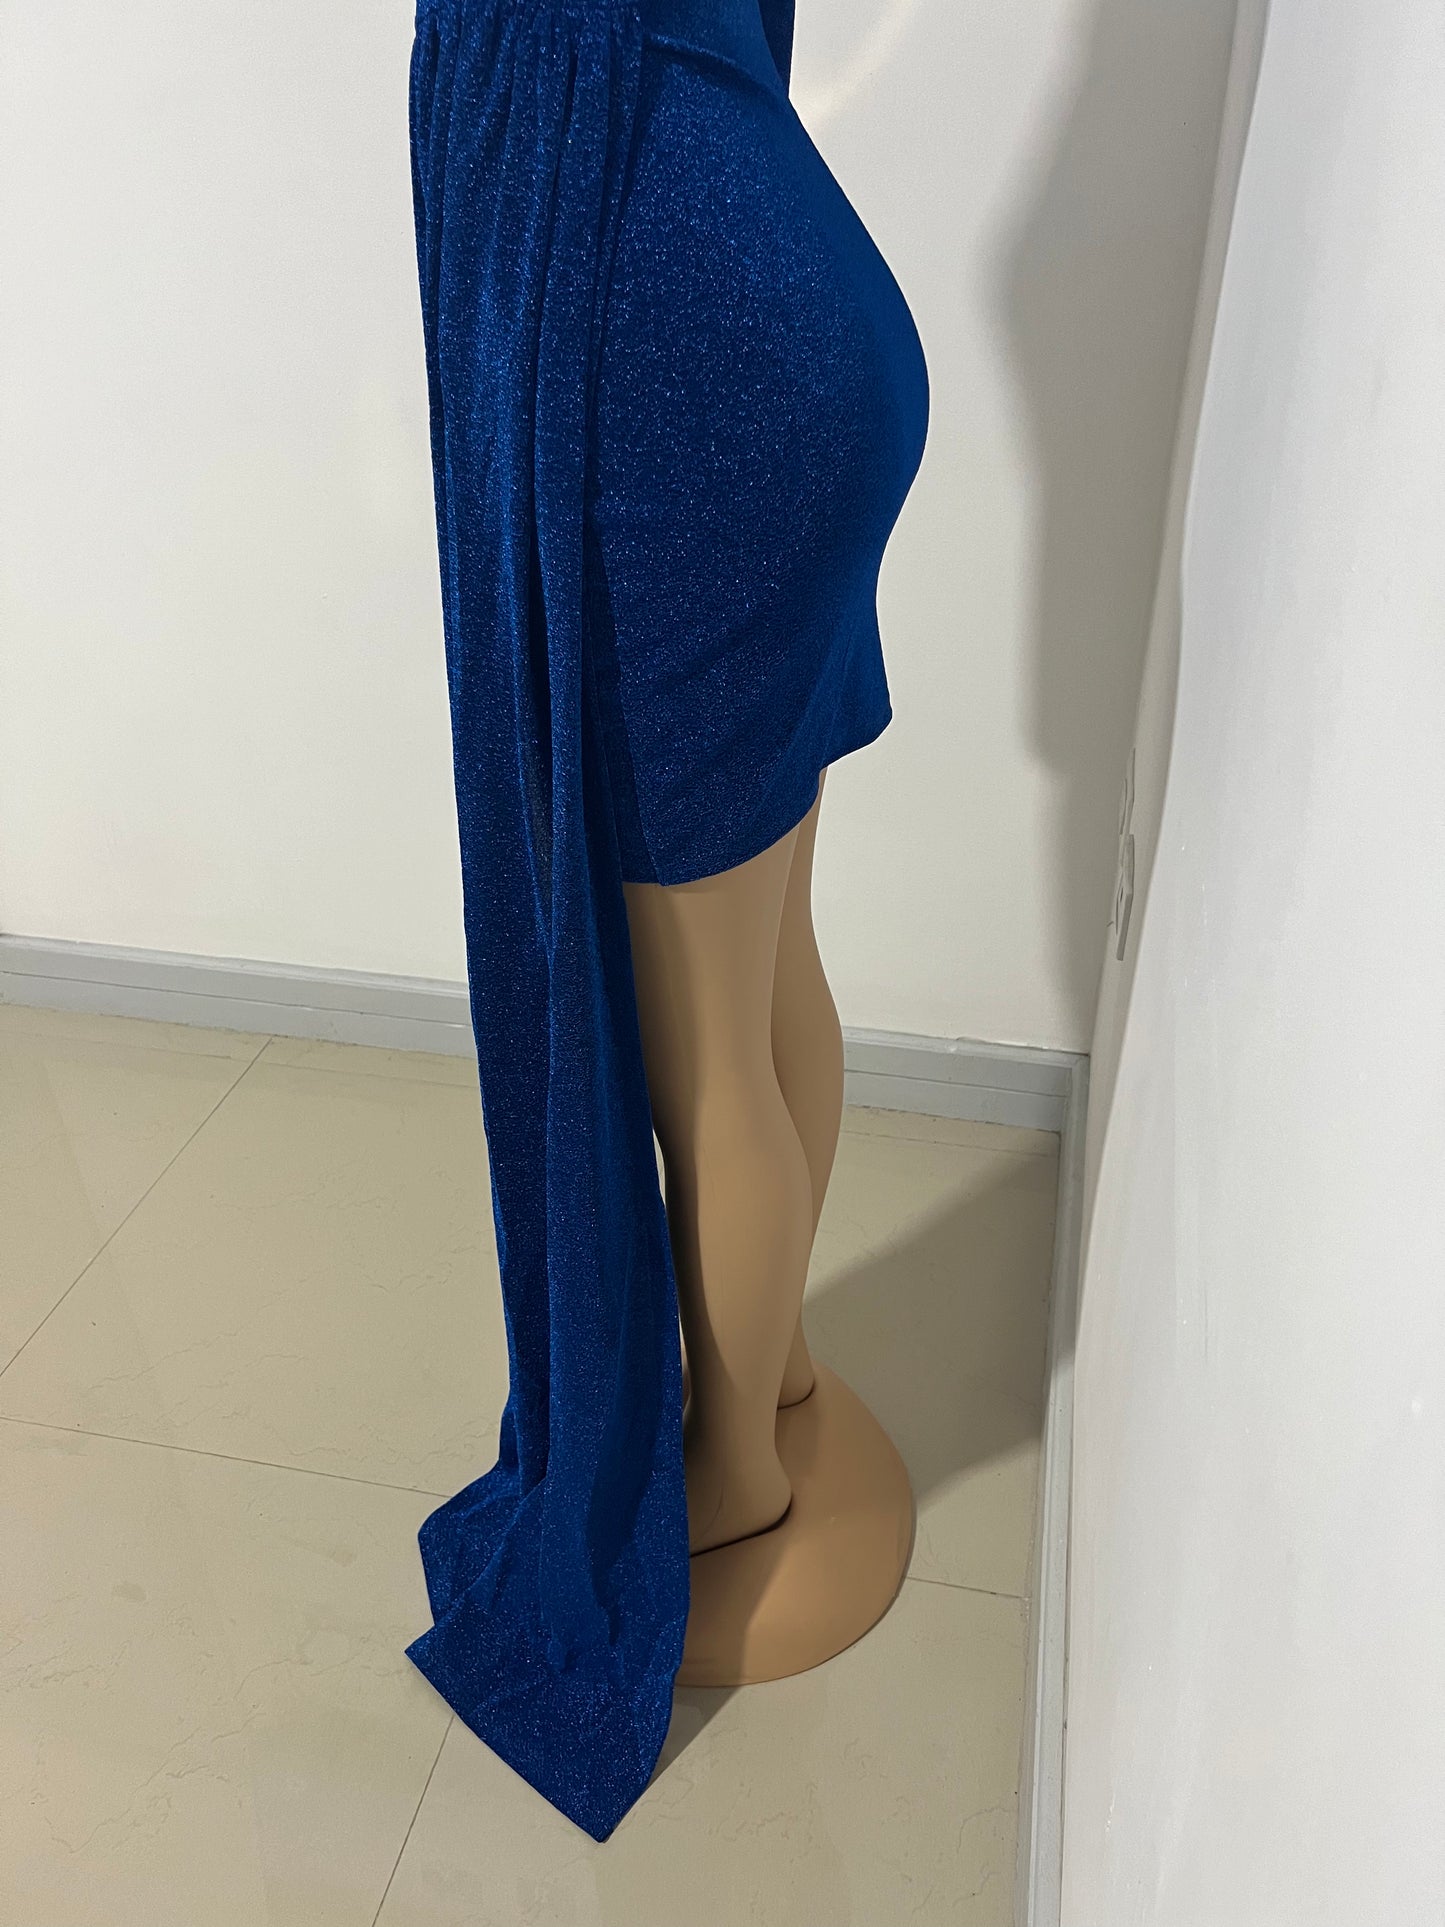 Allegra Elegant Dress (Blue)